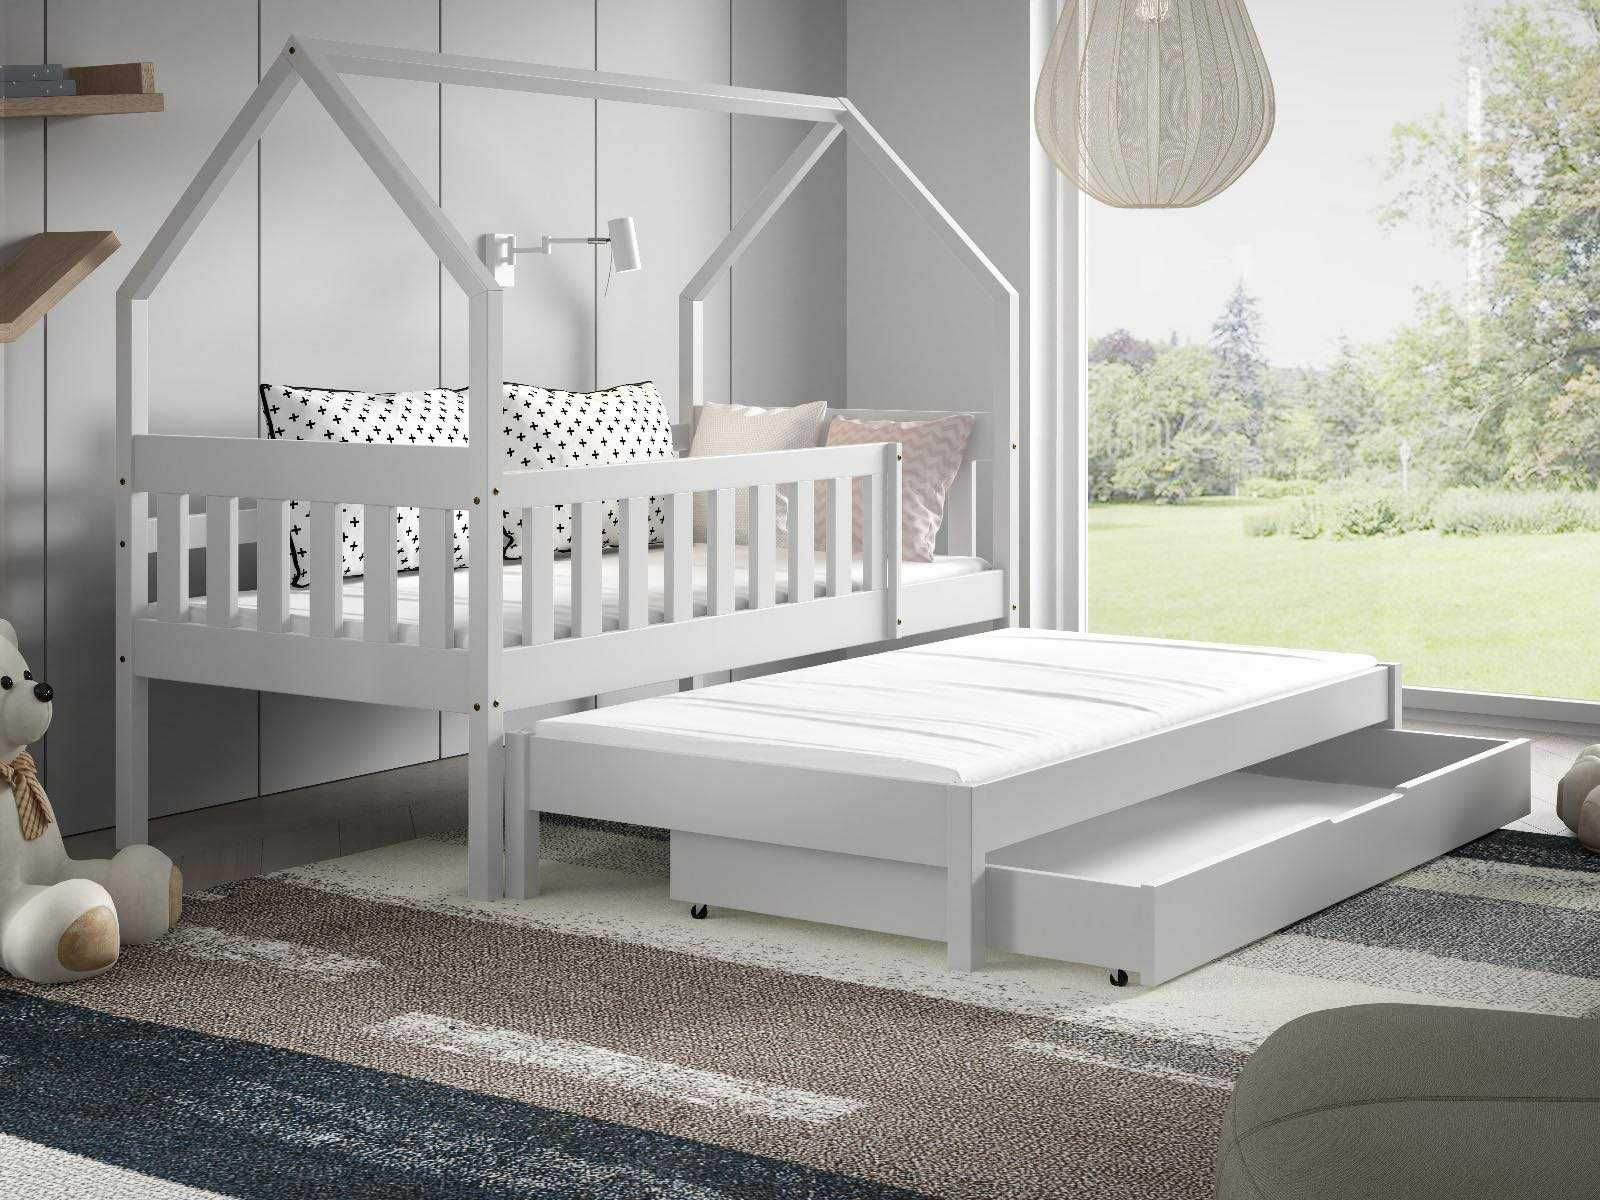 Łóżko dla 2 dzieci DOMEK LUNA 160x80 - materace w zestawie!